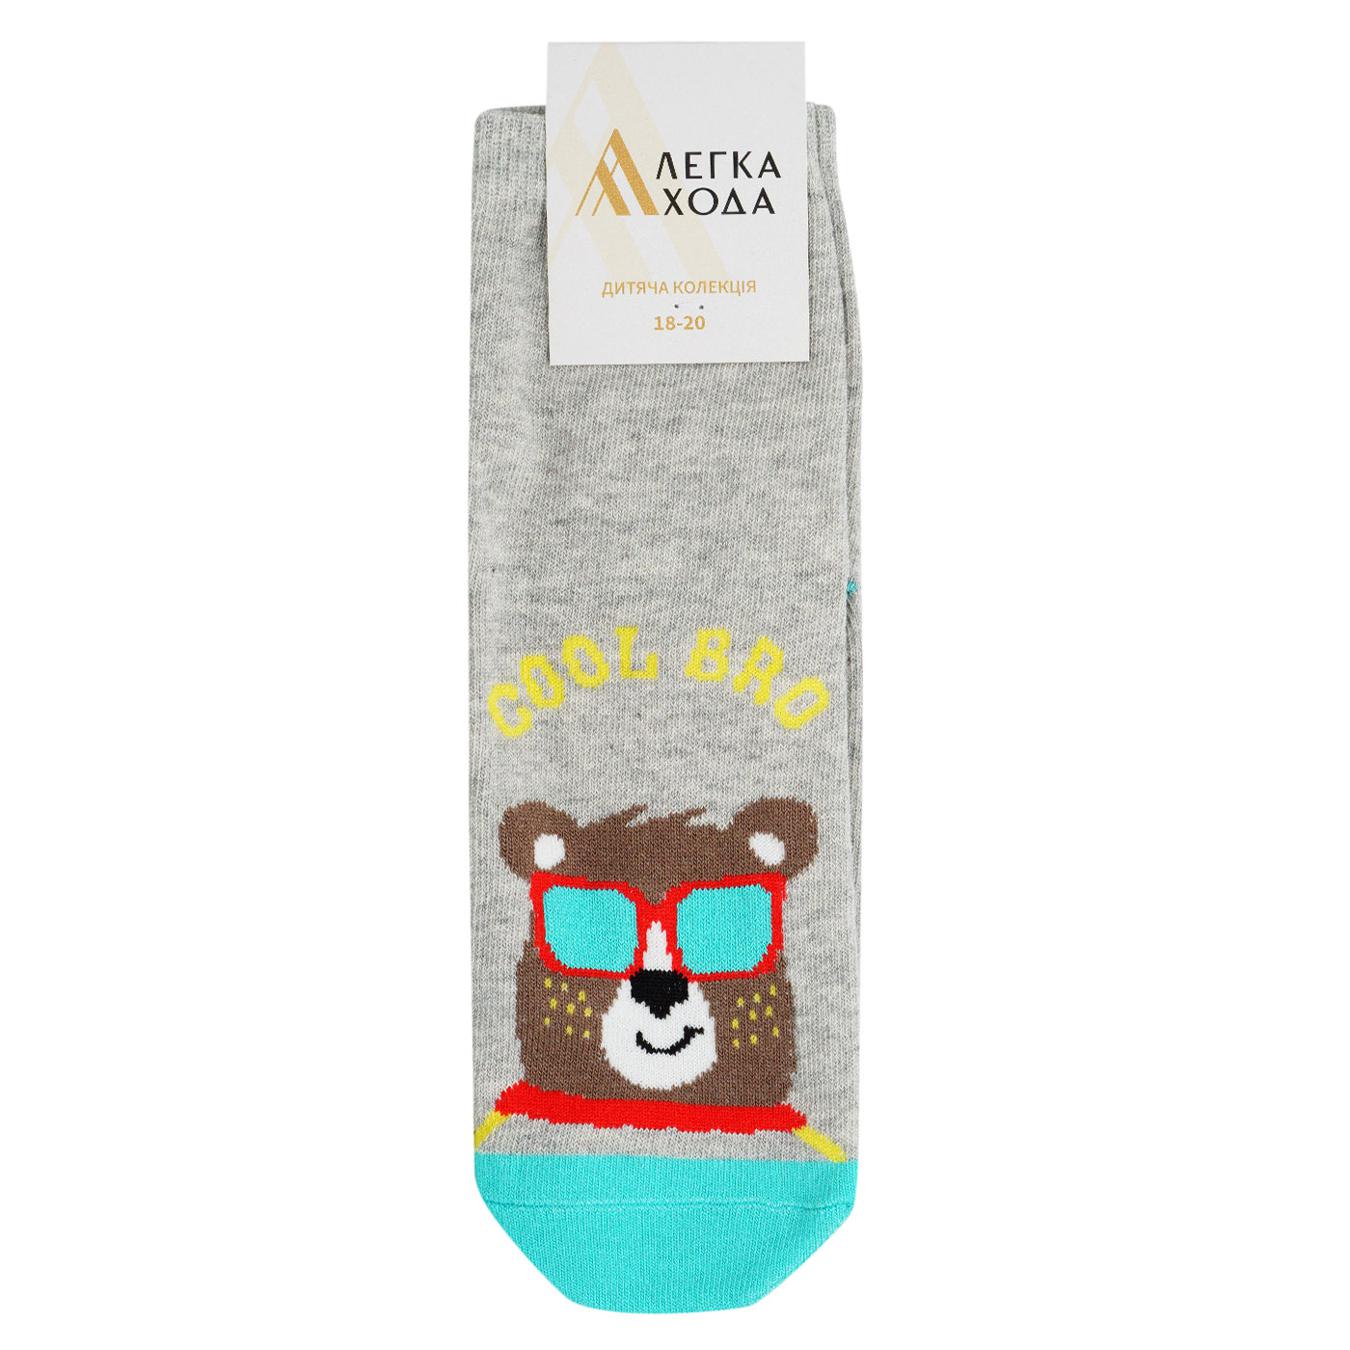 Children's socks Lekka Hoda silver melange size 18-20